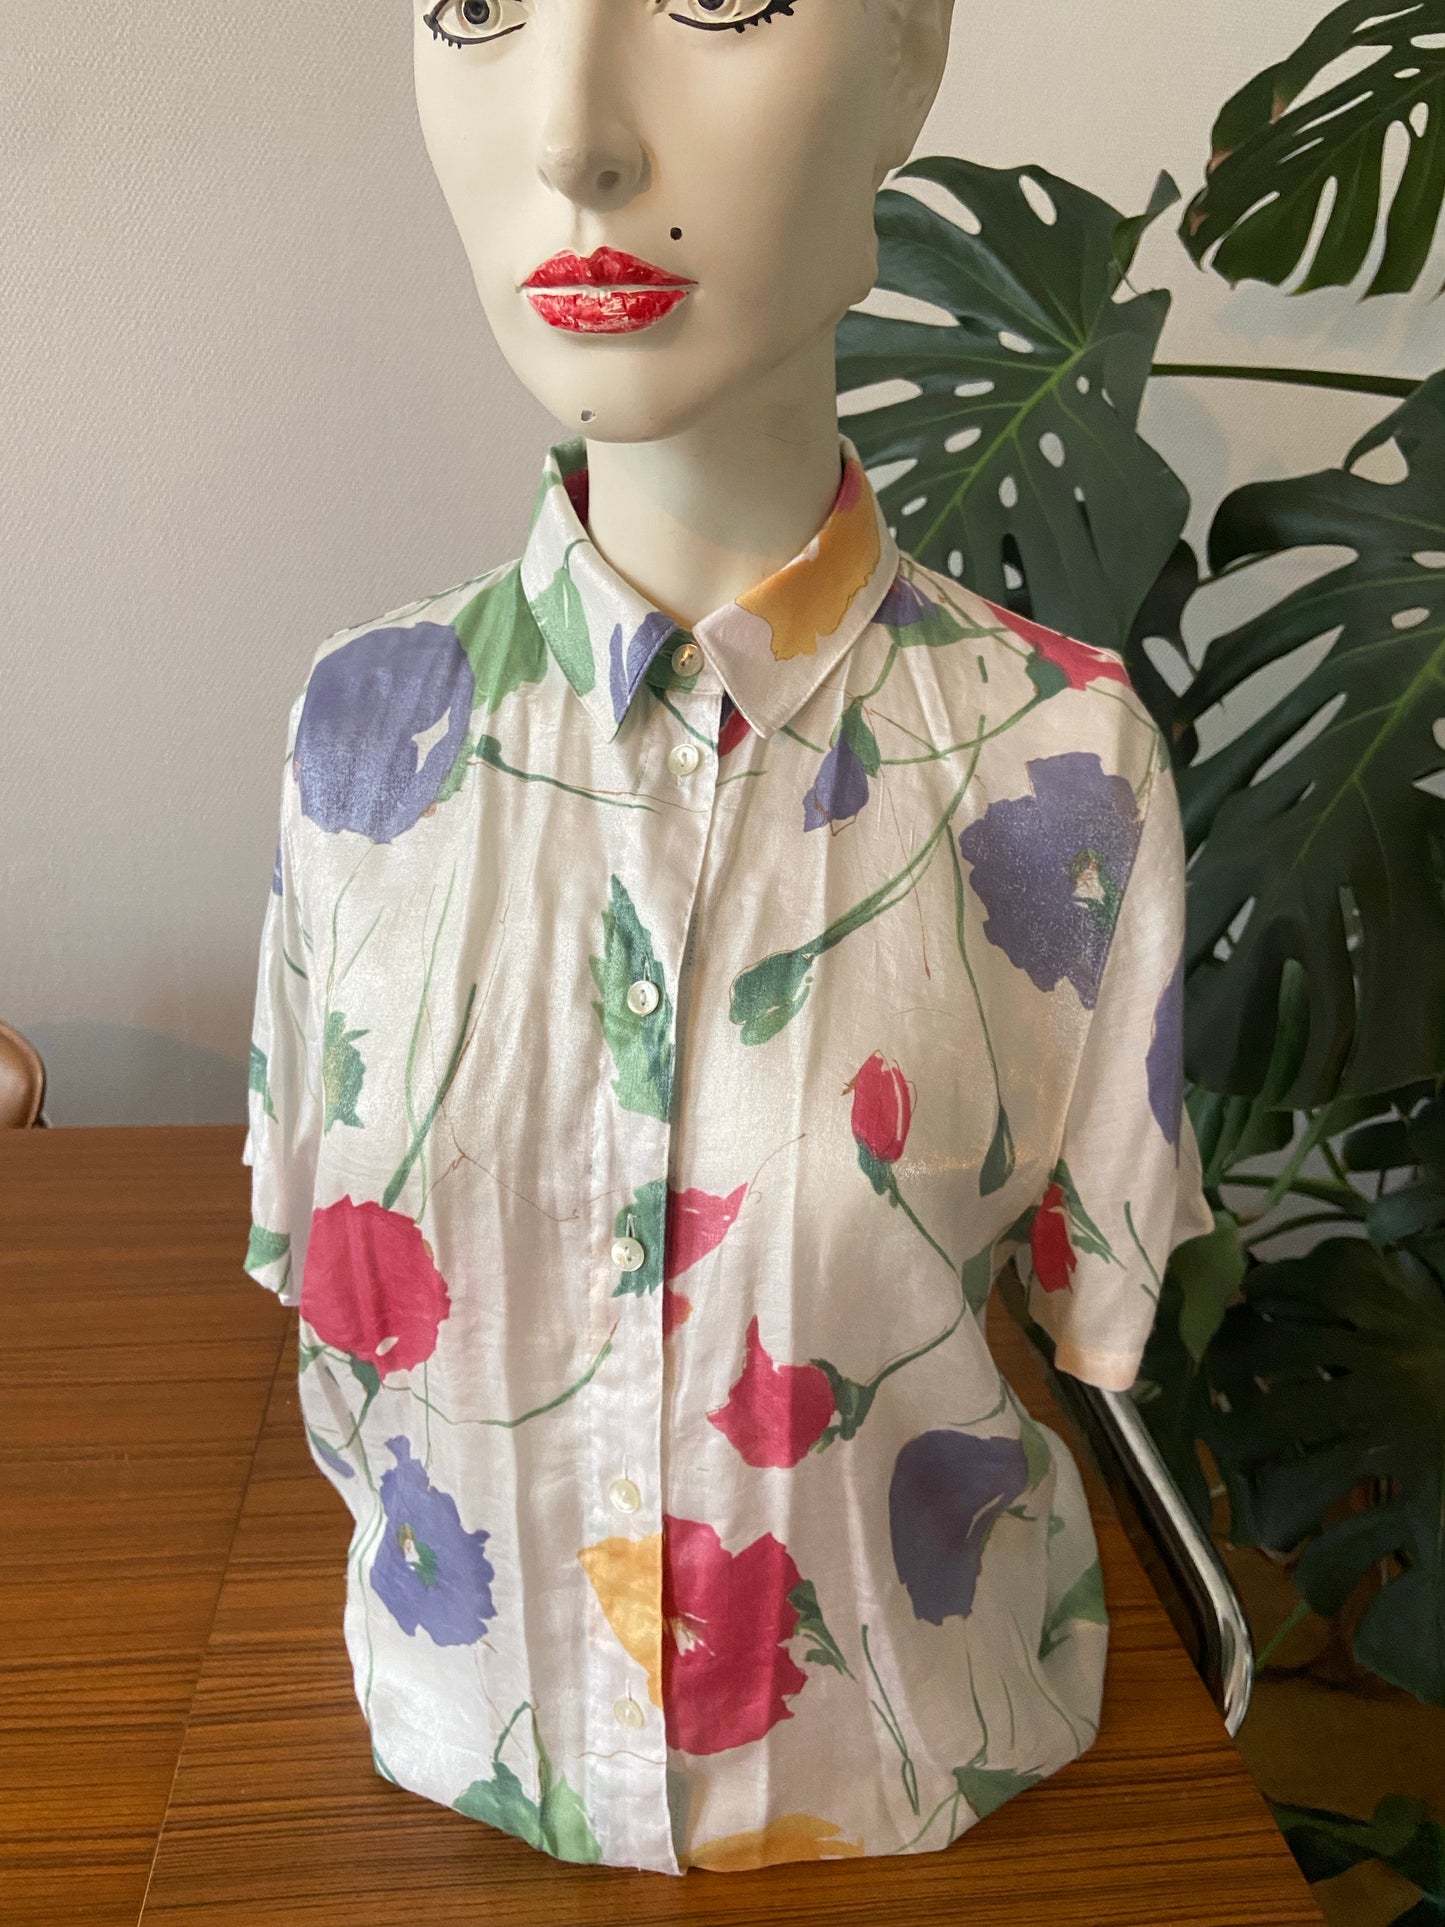 Iridescent floral shirt